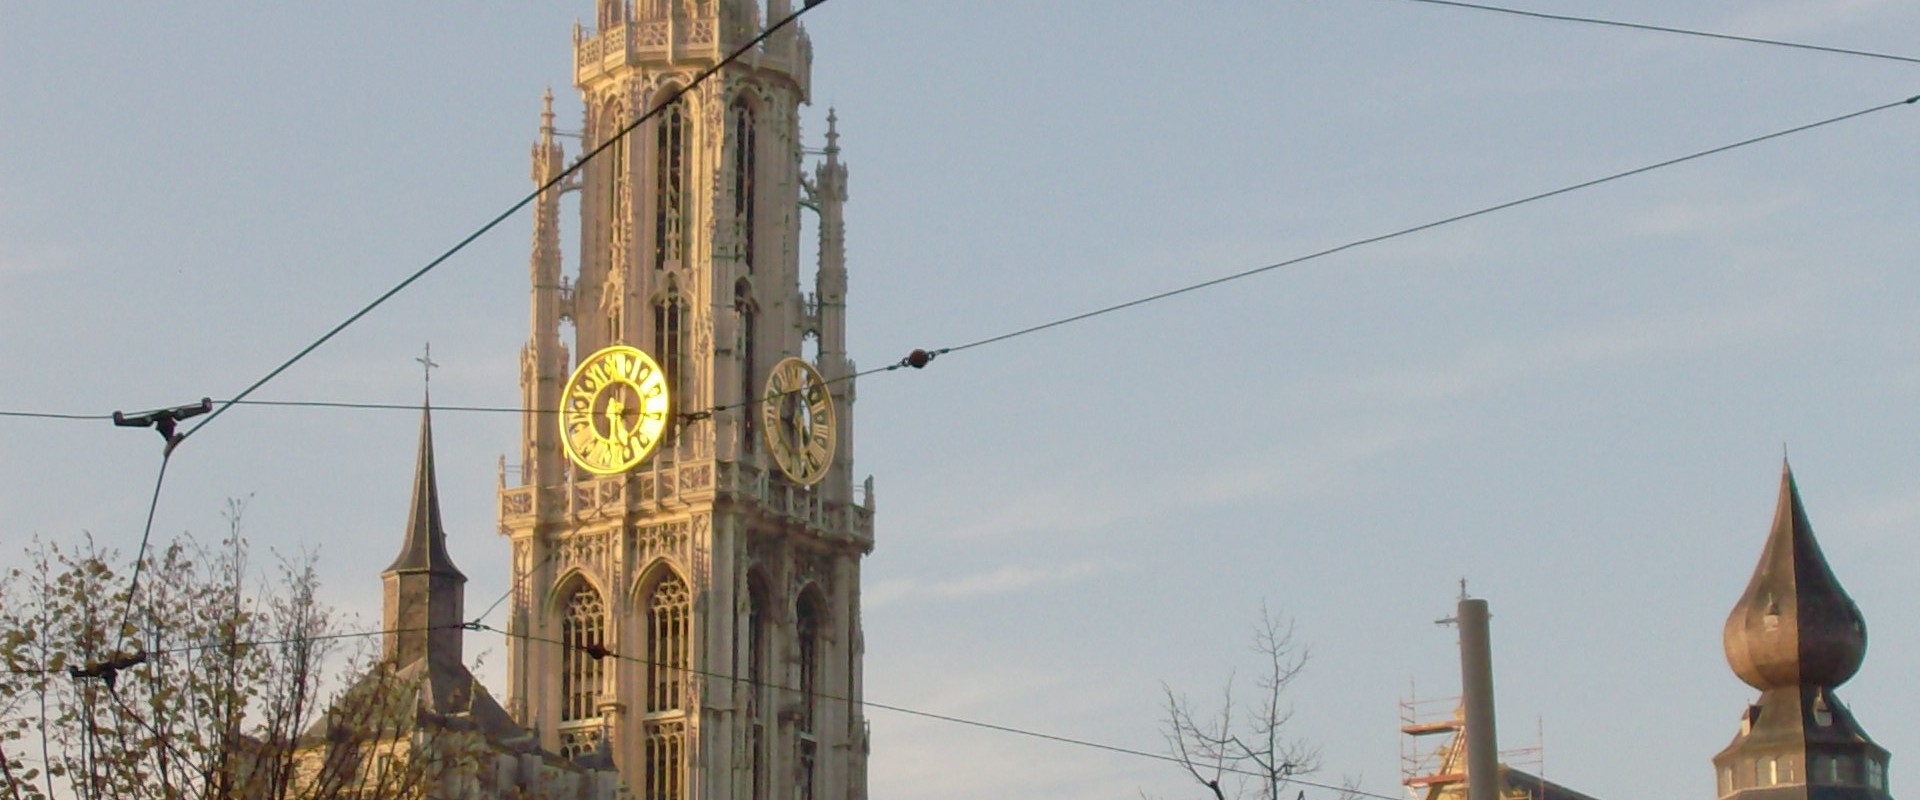 Onze-Lieve-Vrouwe kathedraal Antwerpen